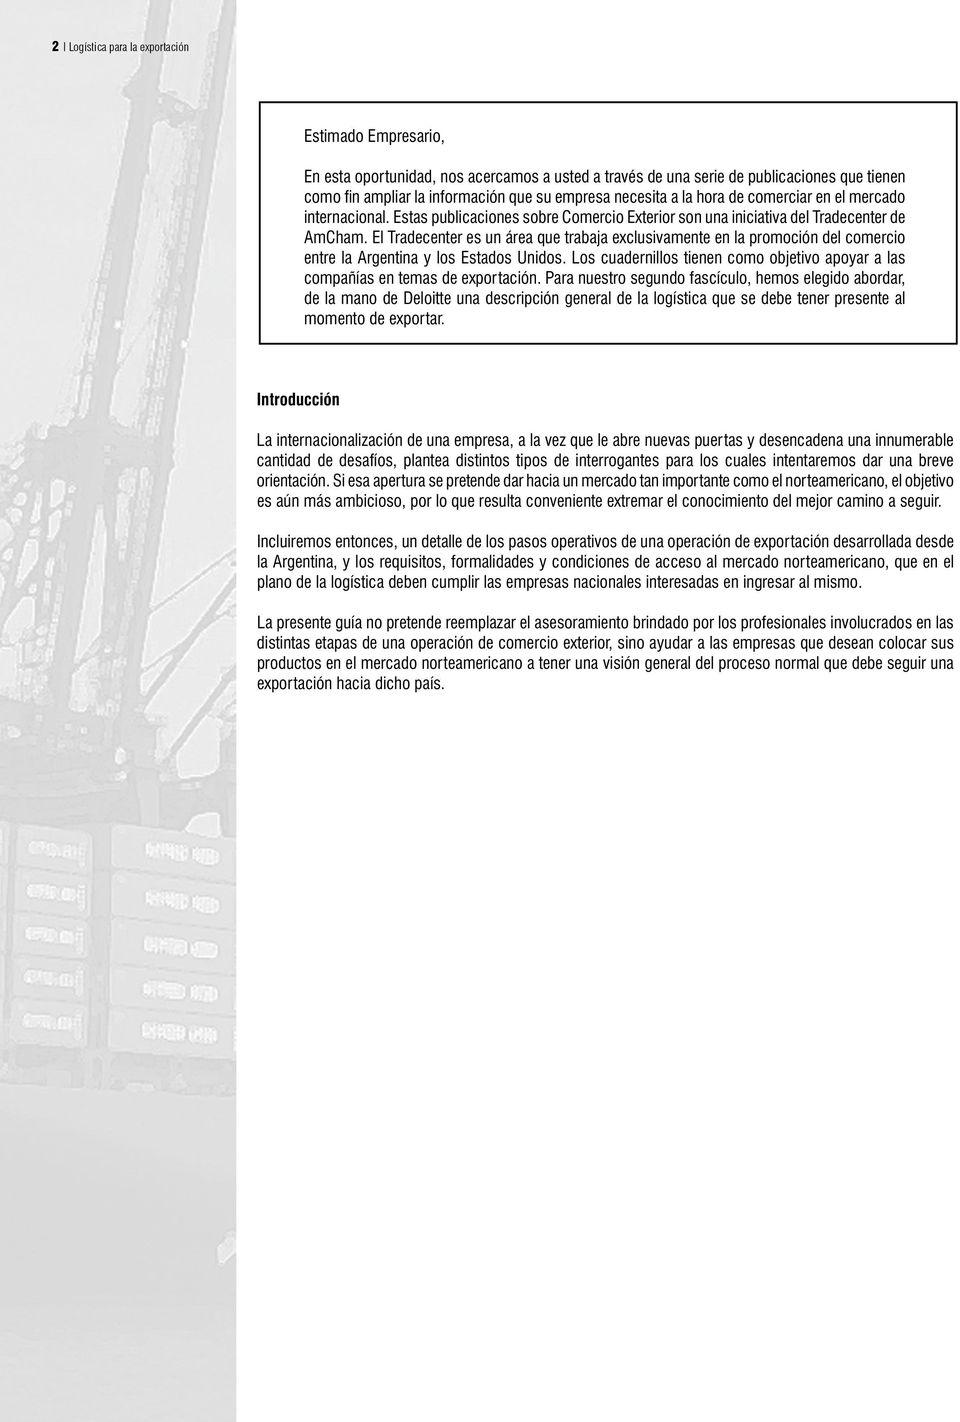 El Tradecenter es un área que trabaja exclusivamente en la promoción del comercio entre la Argentina y los Estados Unidos.